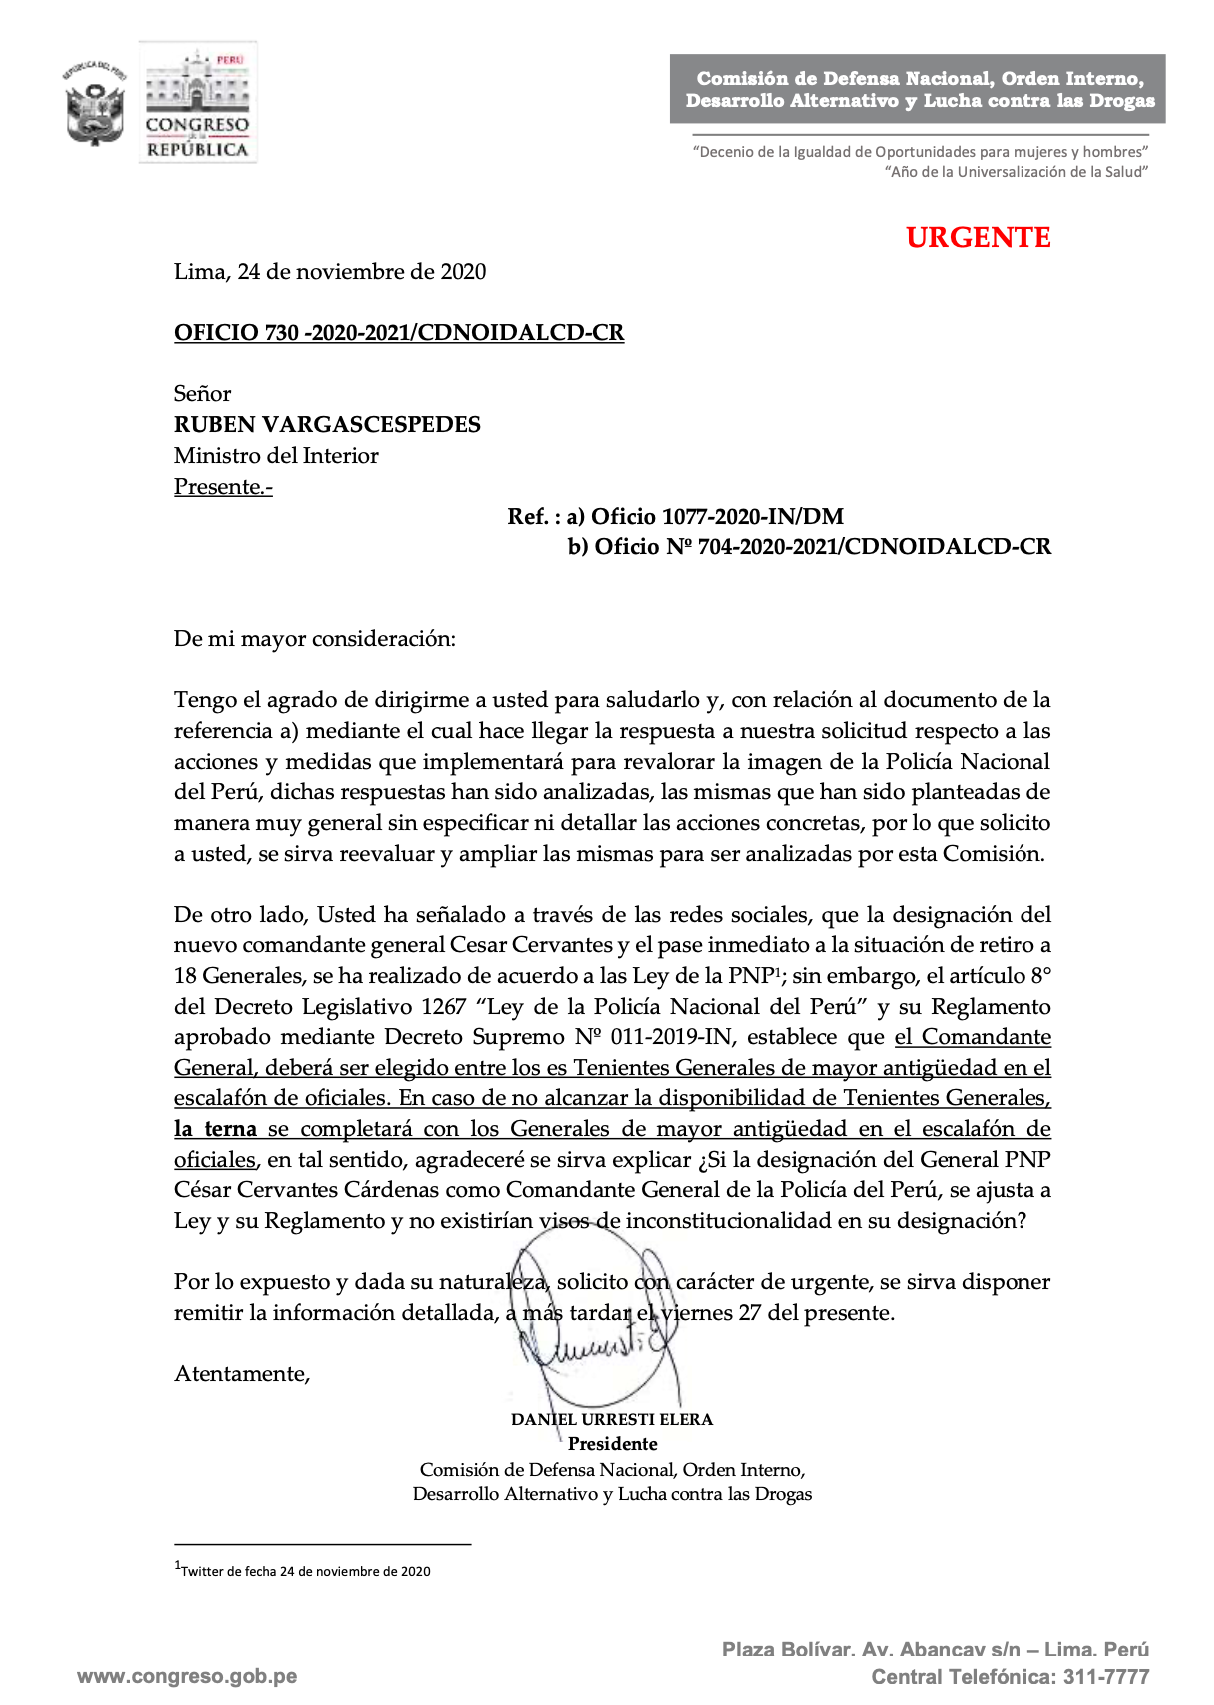 Carta de Daniel Urresti al ministro del Interior